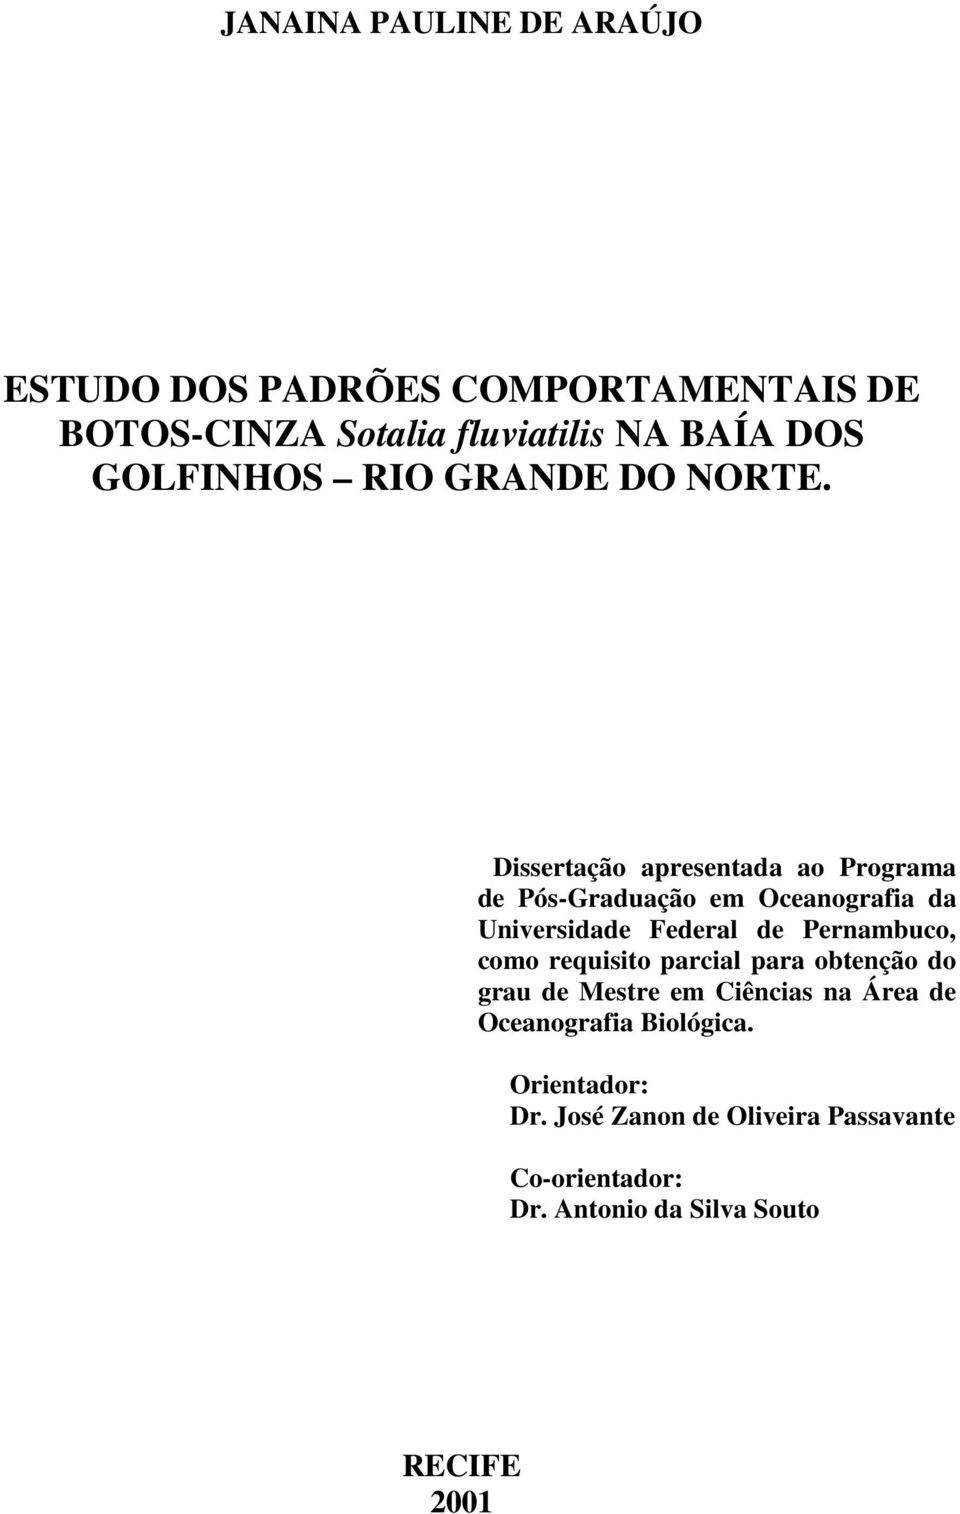 Dissertação apresentada ao Programa de Pós-Graduação em Oceanografia da Universidade Federal de Pernambuco, como